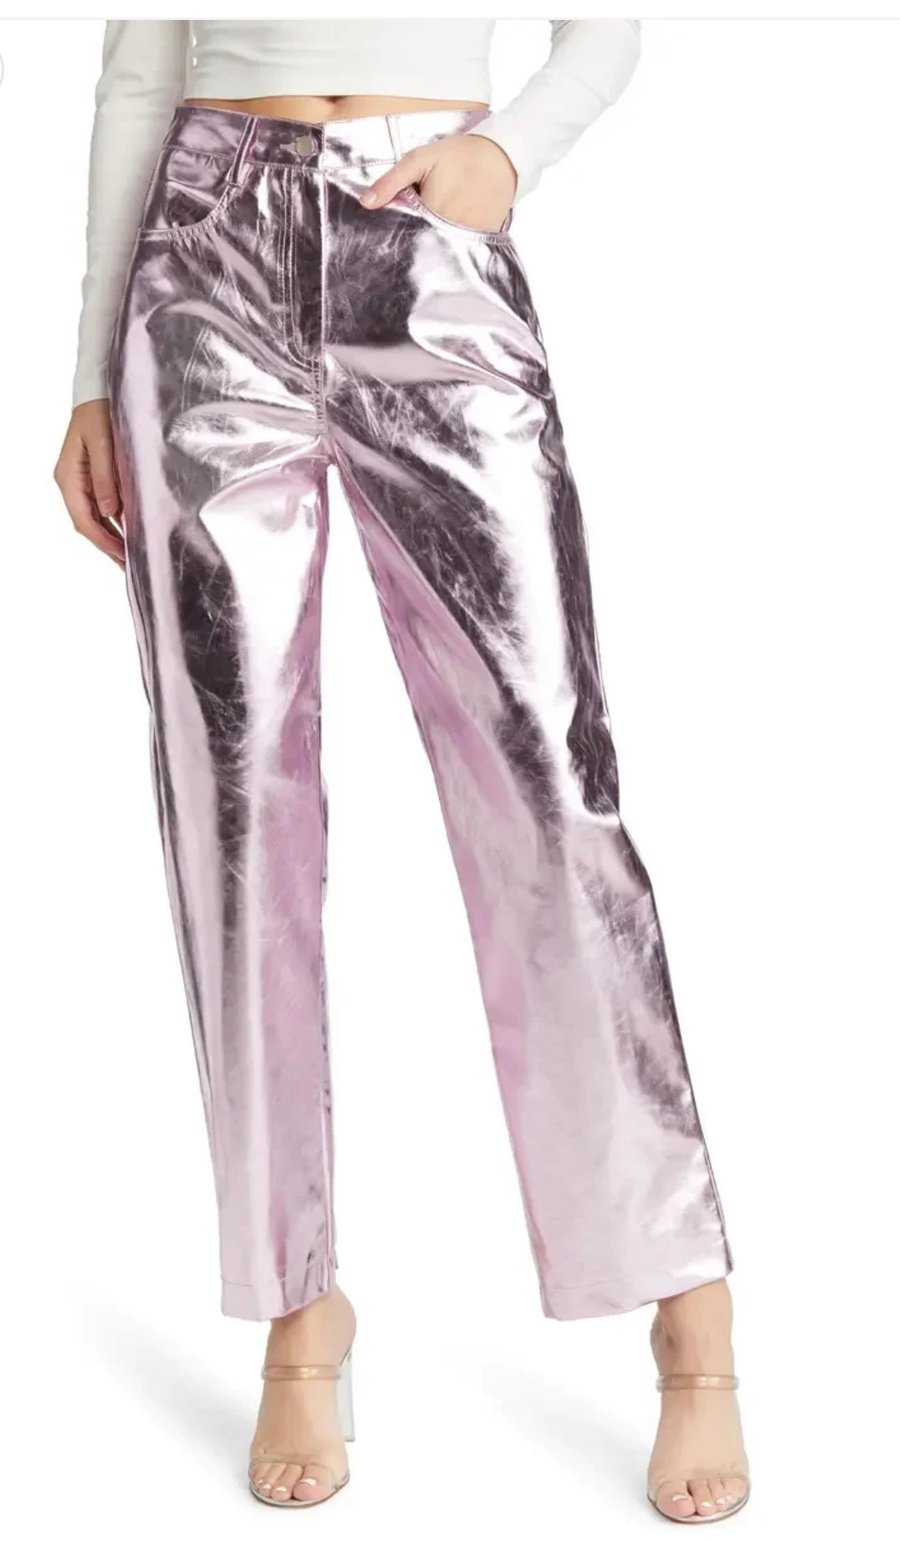 Image of Lupe Metallic Pants- Pale Pinkl